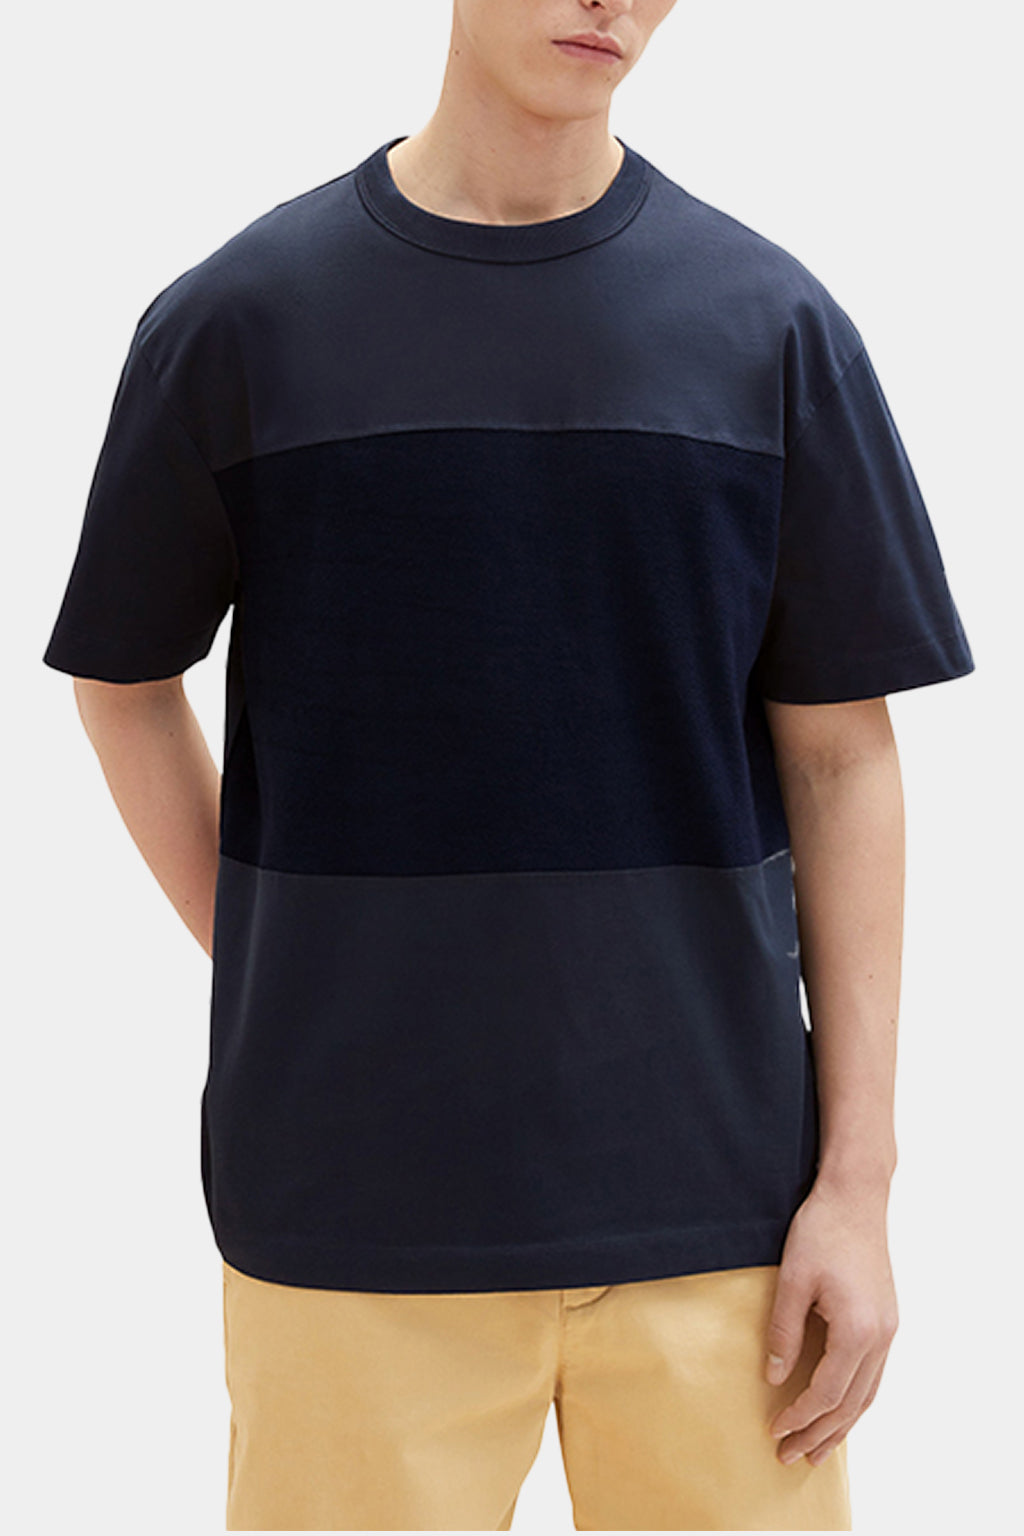 Tom Tailor - Denim Men's T-shirt